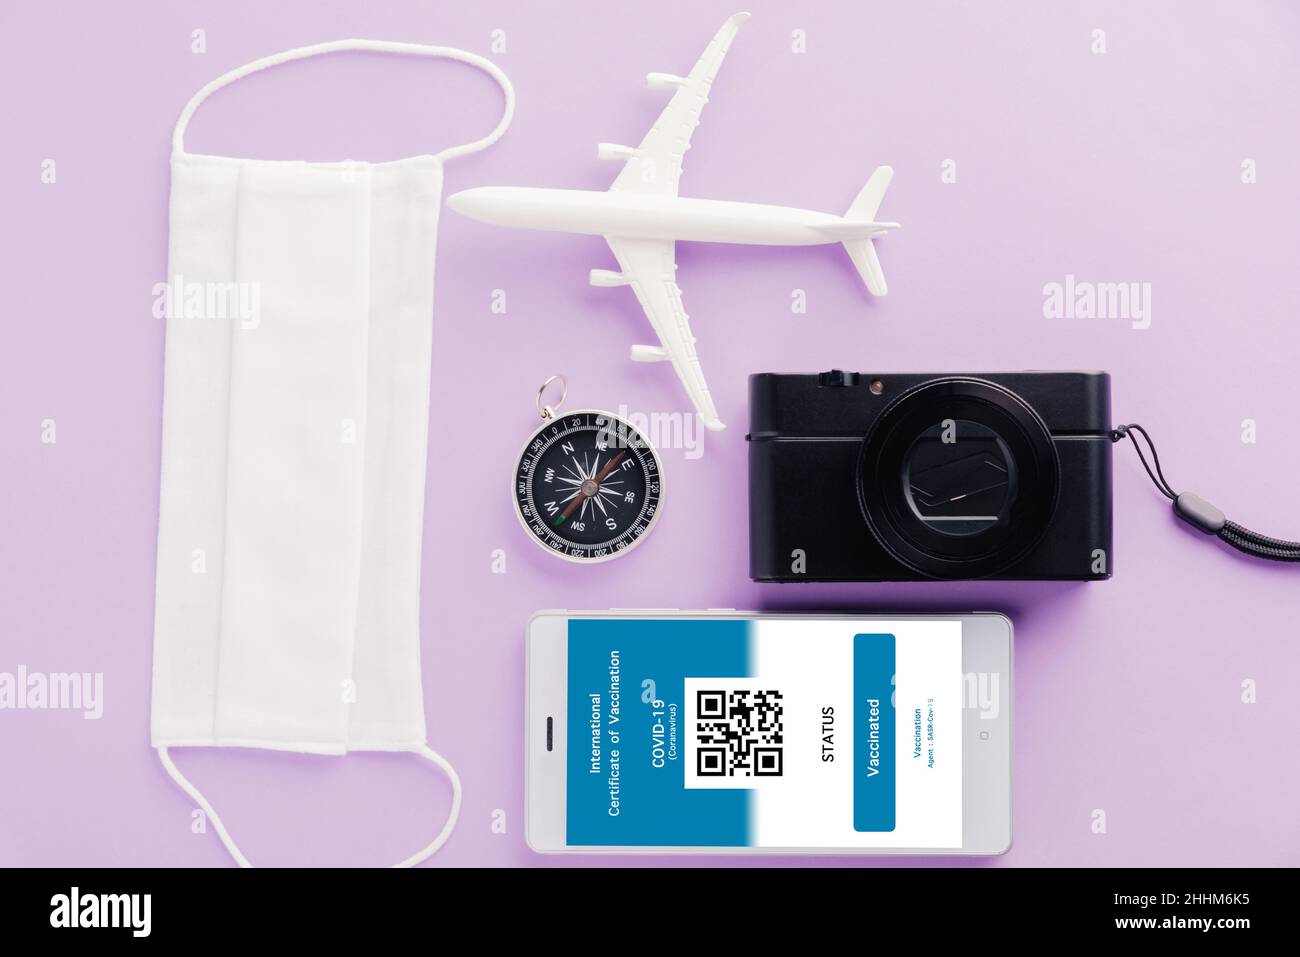 Modellflugzeug, Kamera, Gesichtsmaske und Immunität Pass Anwendung auf  Smartphone auf lila Hintergrund, Travel Concept während Covid-19 Pandemie  digital in Stockfotografie - Alamy